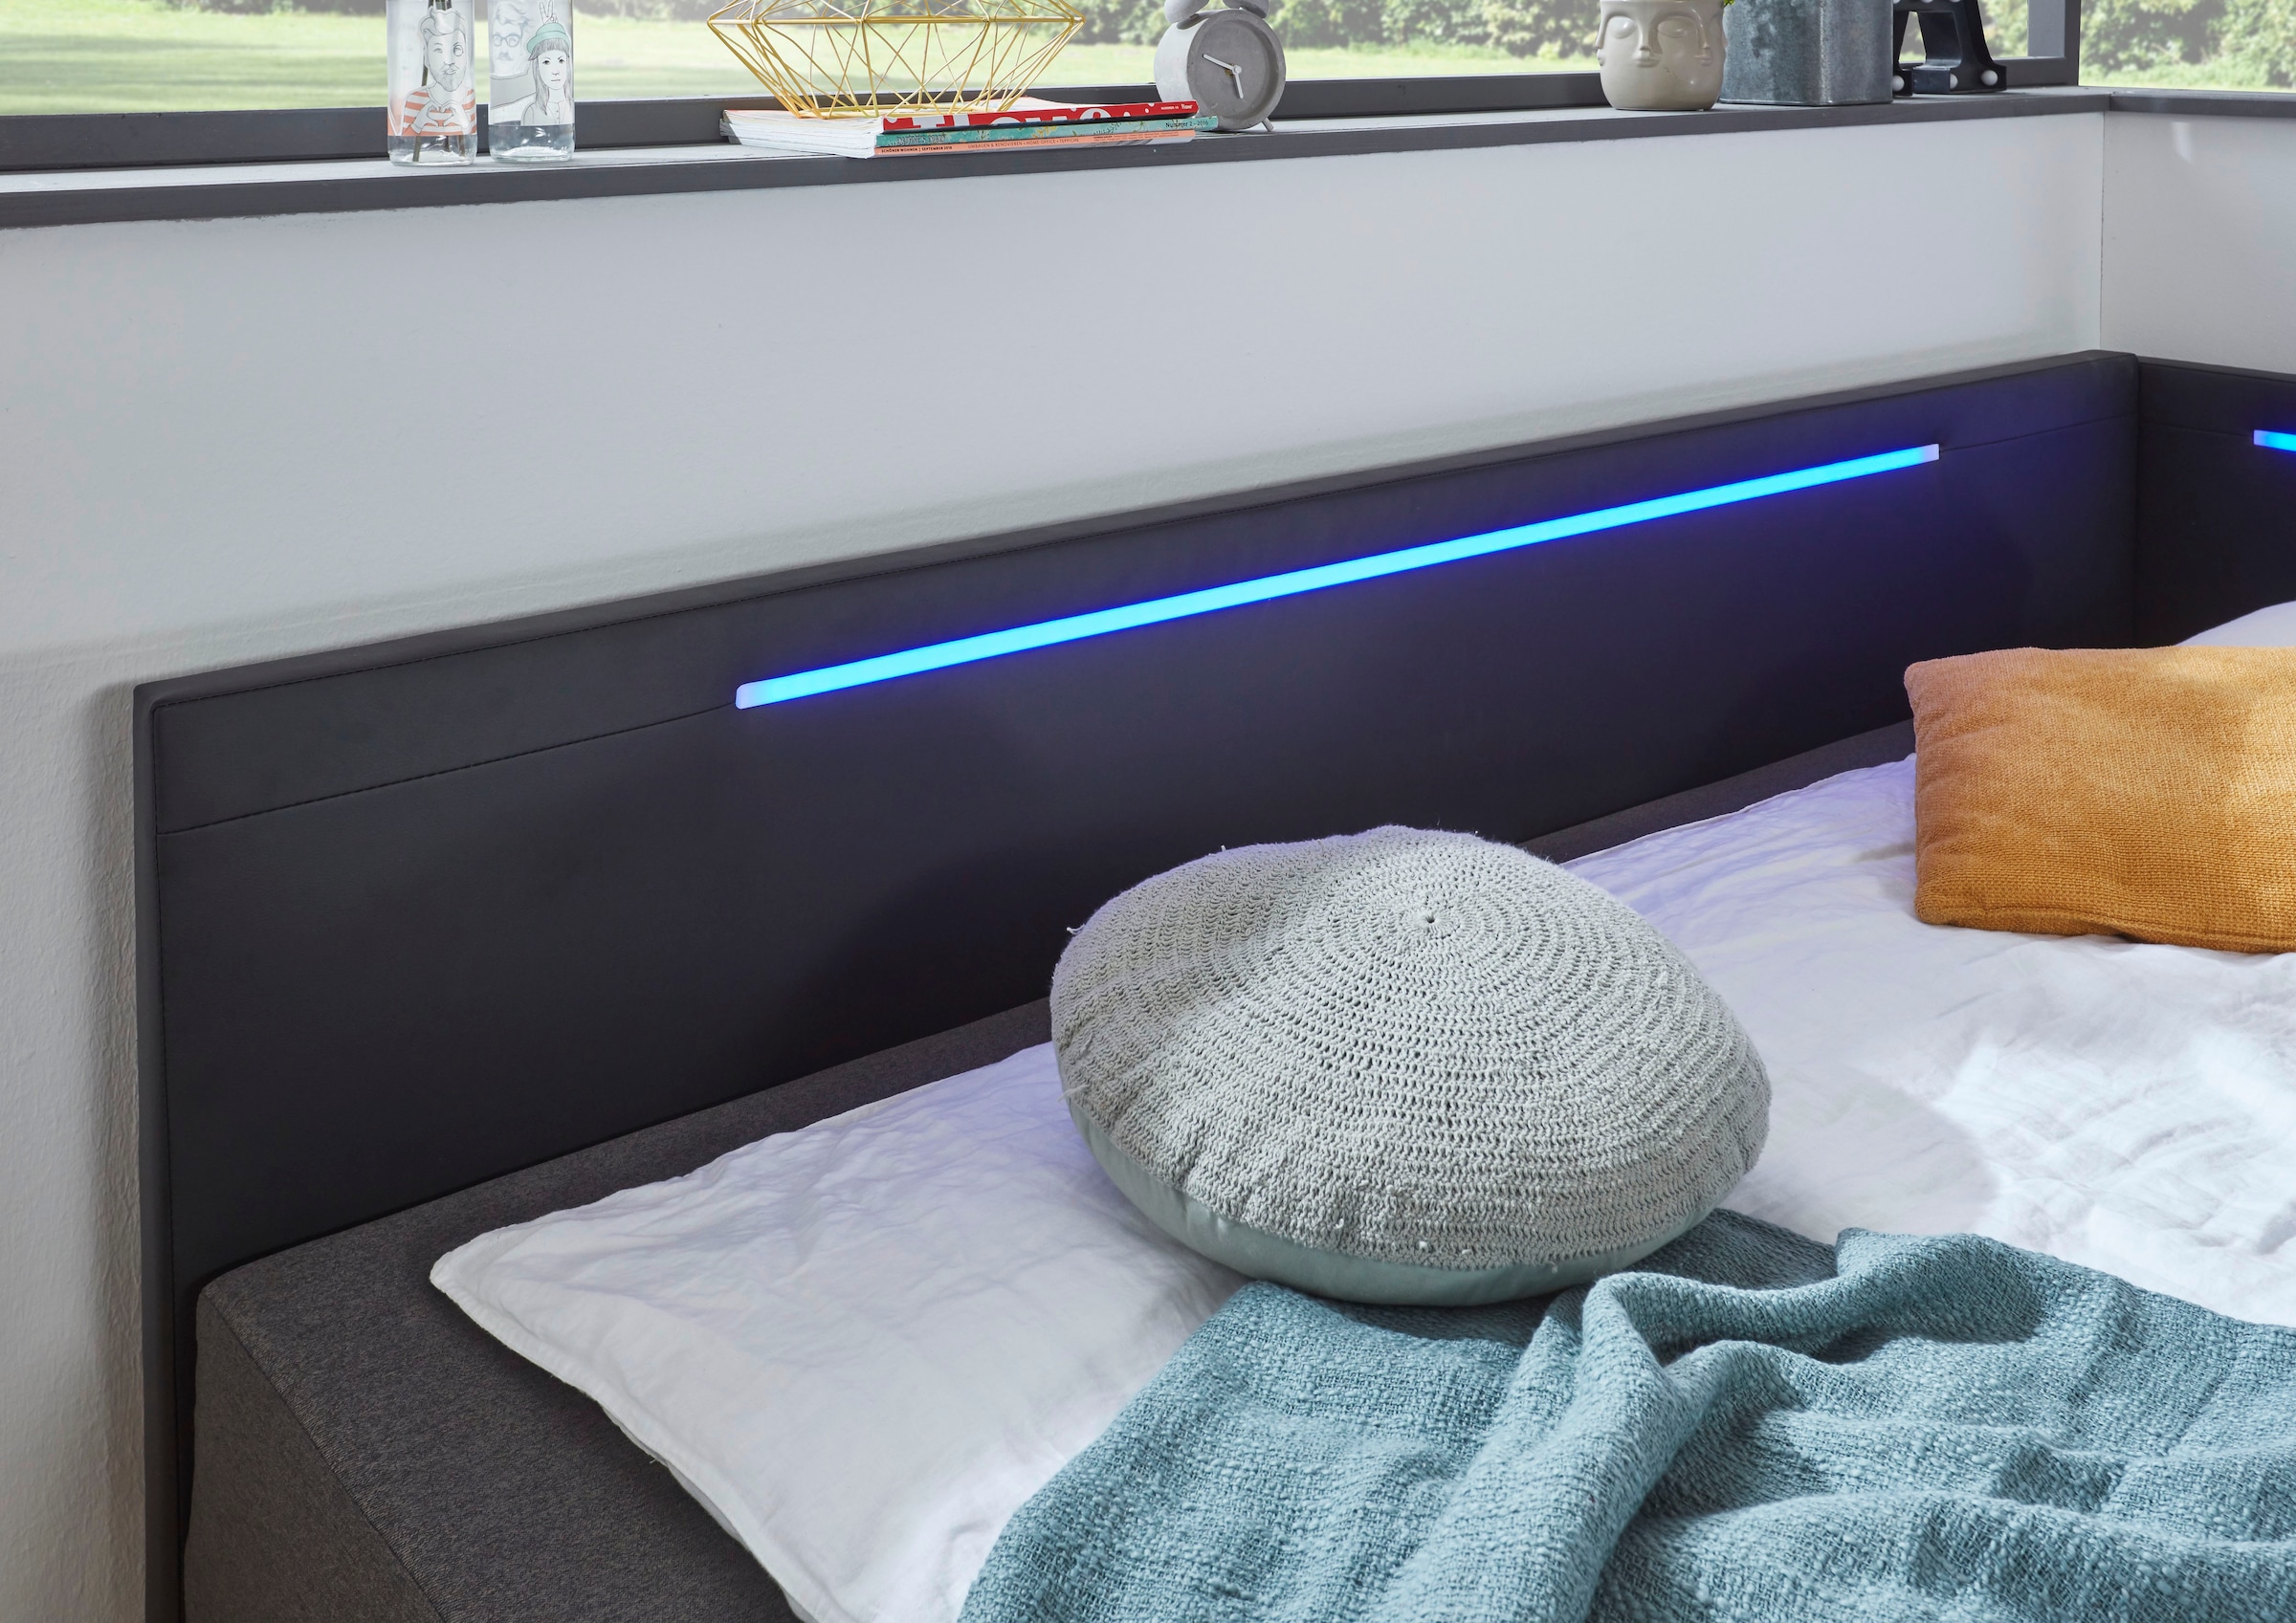 meise.möbel Polsterliege »Laser«, mit LED Beleuchtung, inkl. Matratze und Bettkasten